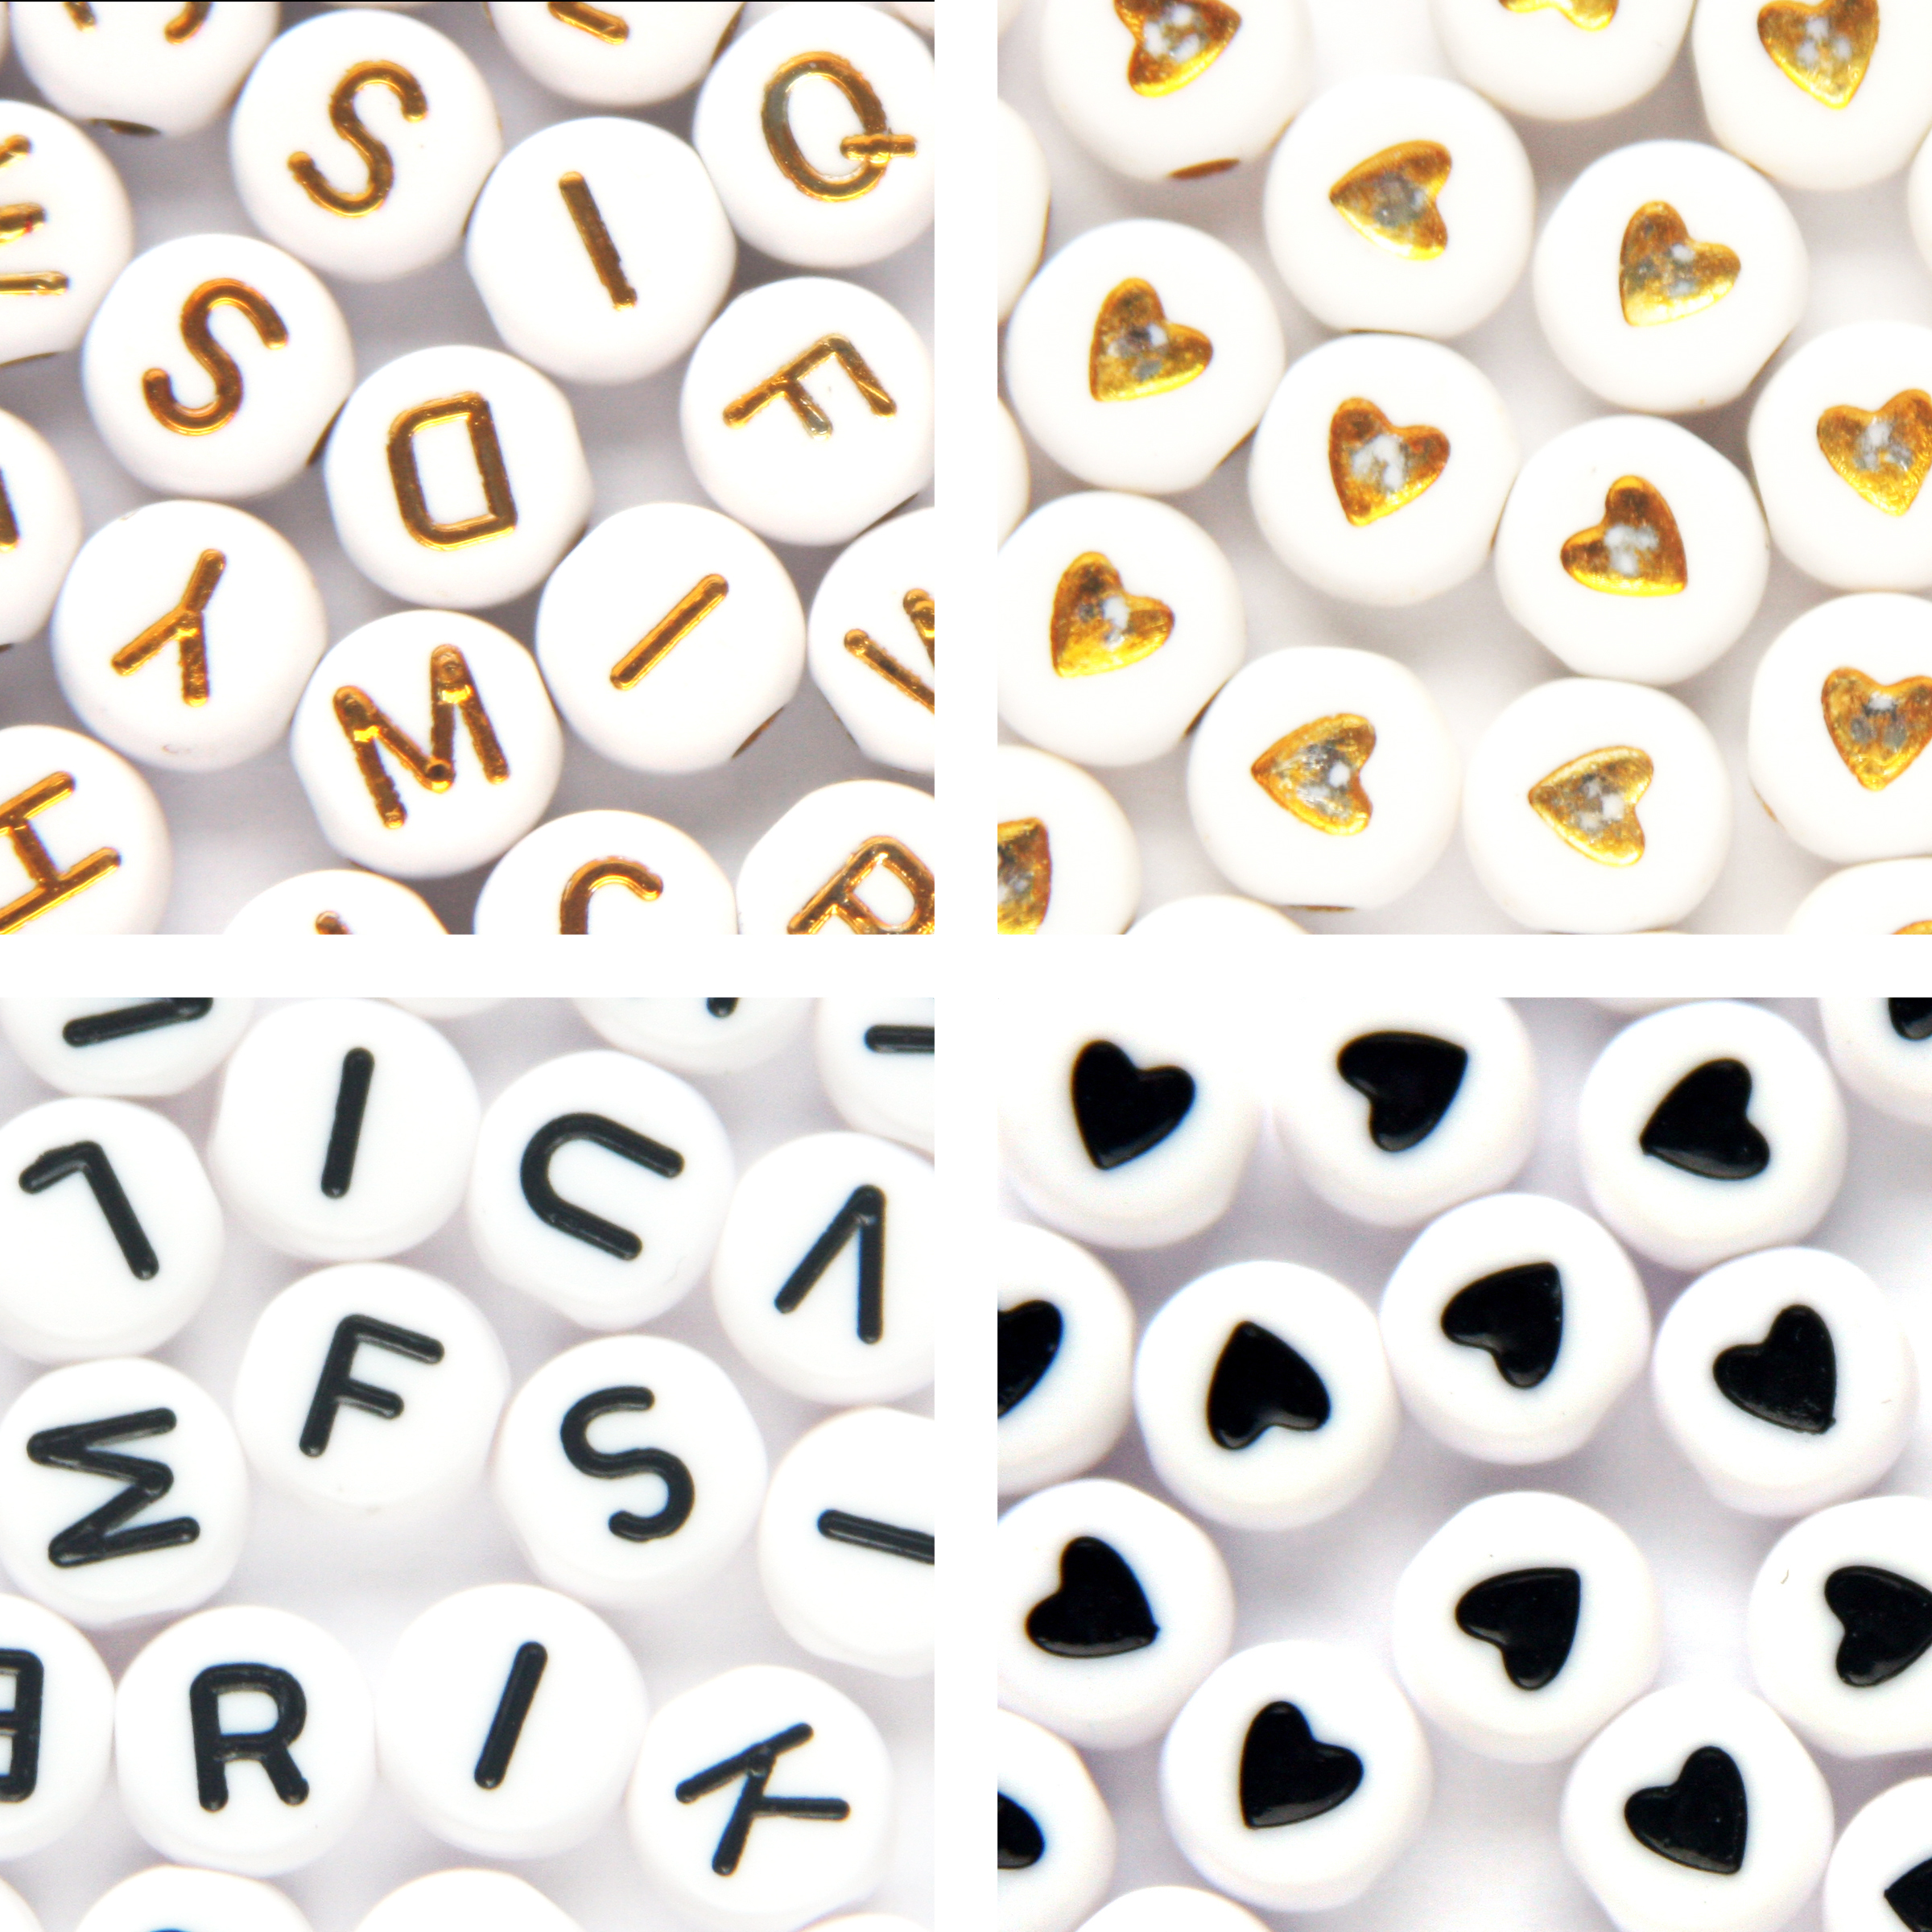 Principessa Letterkralen set met hartjes – Unieke mix 450 stuks – Wit/Goud & Wit/Zwart – 7mm kraal – Alfabet kralen